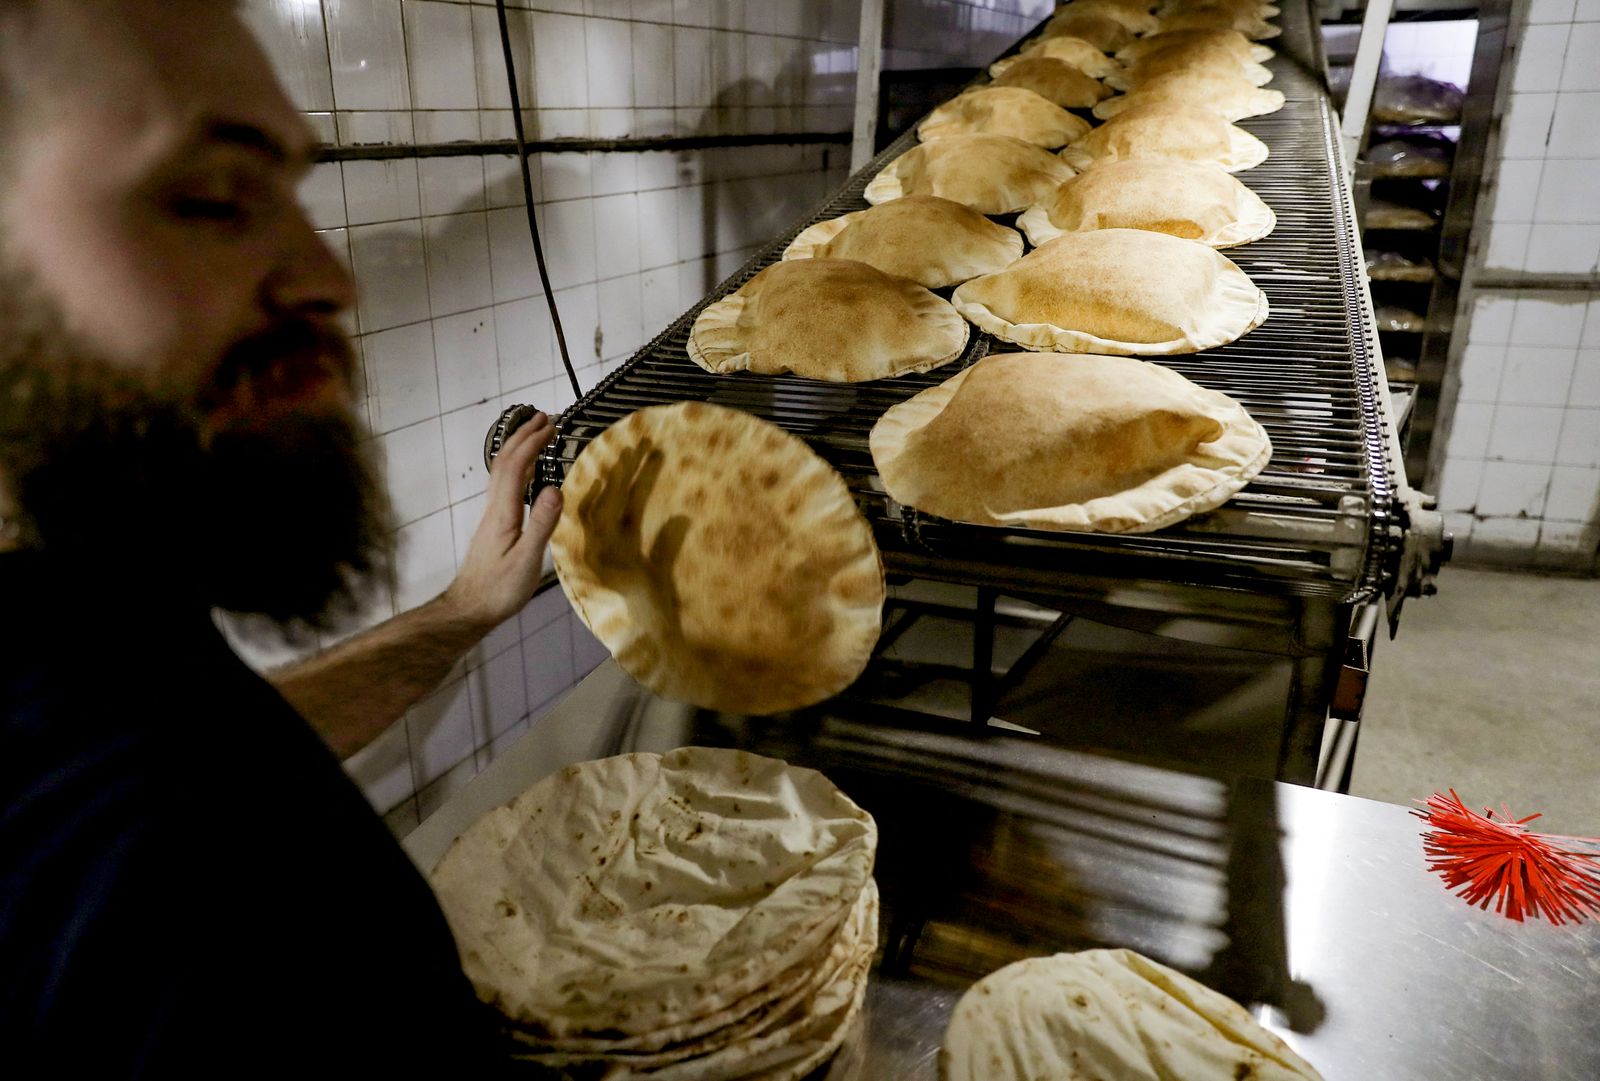 رجل يعمل في مخبز لإعداد الخبر المفرود التقليدي في العاصمة اللبنانية بيروت 26 فبراير 2021 - AFP